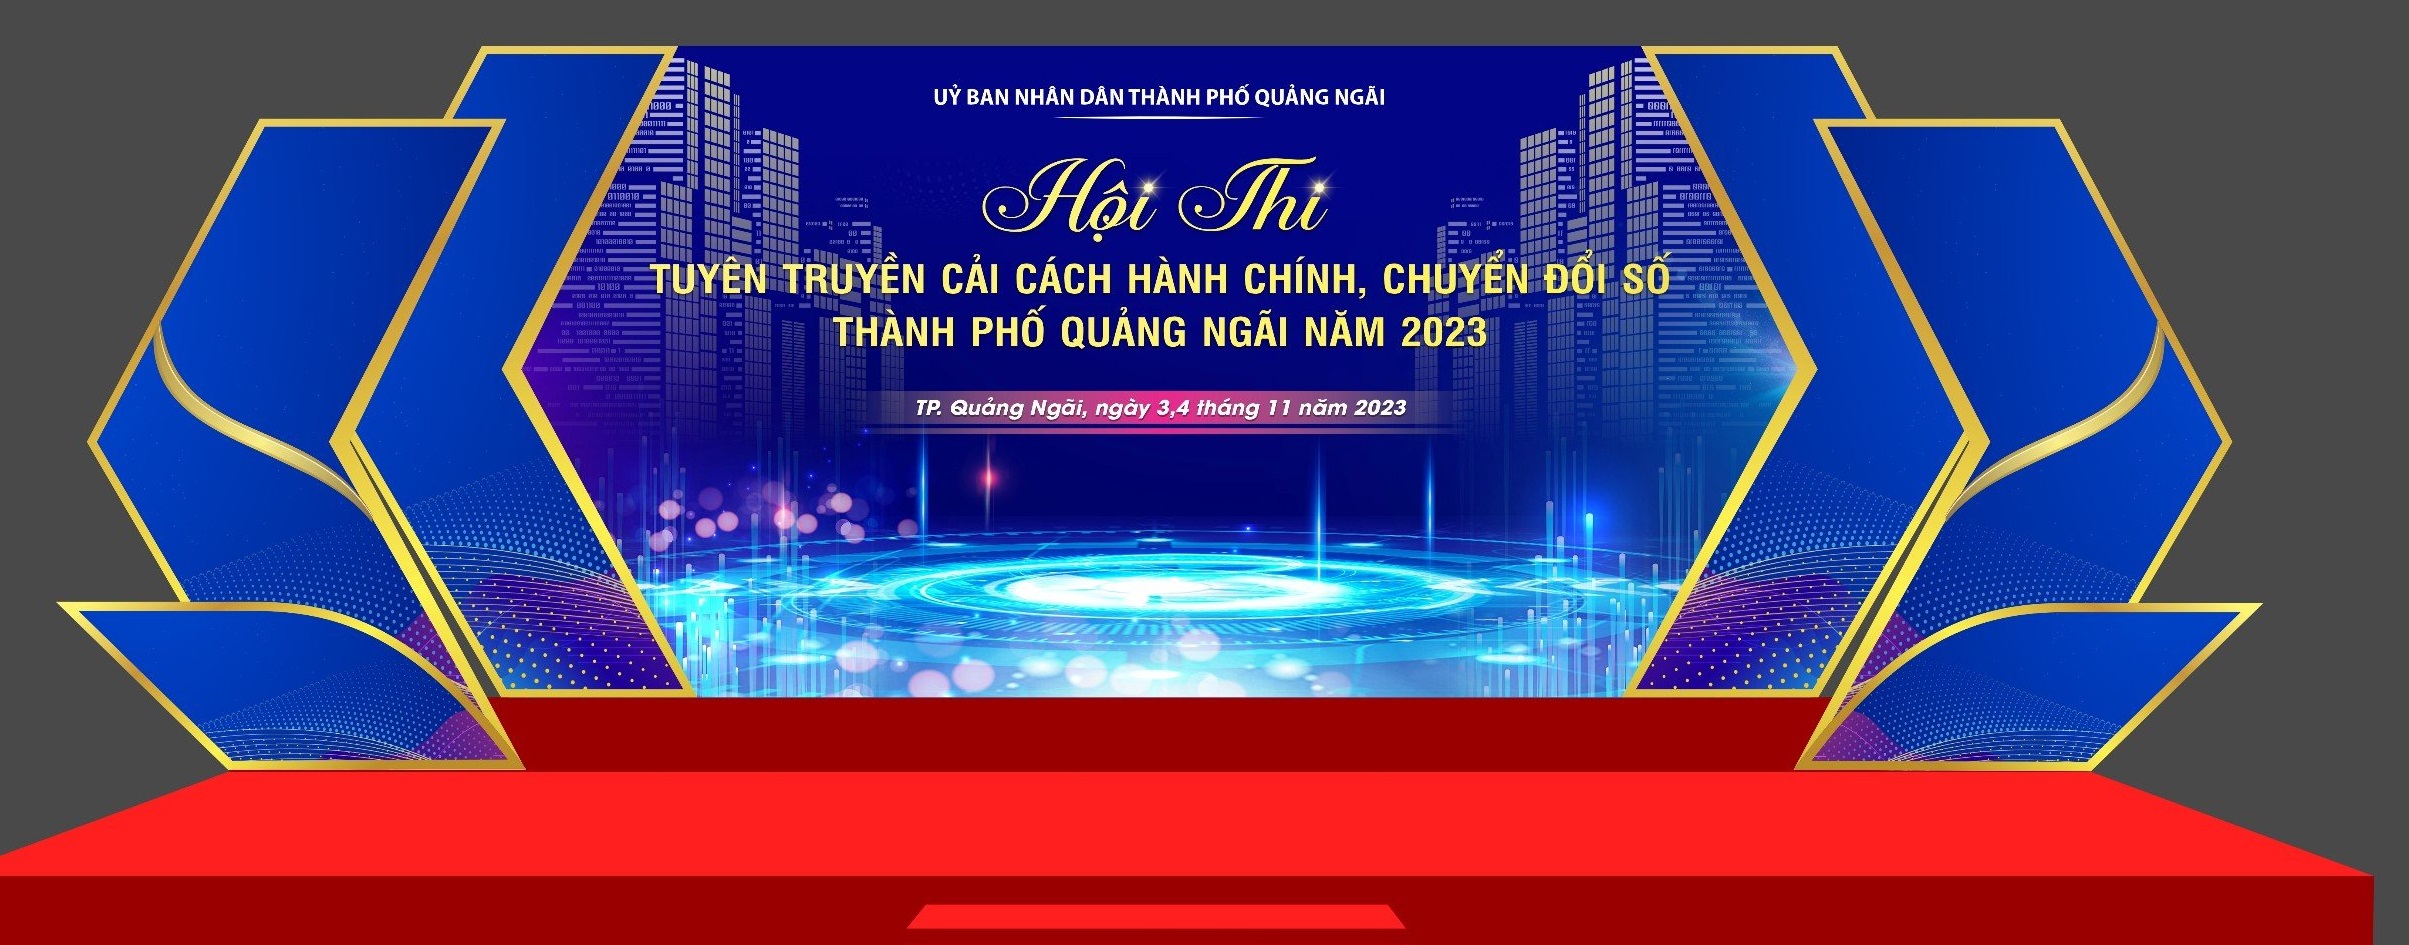 Thành phố Quảng Ngãi tổ chức Hội thi tuyên truyền cải cách hành chính, chuyển đổi số năm 2023